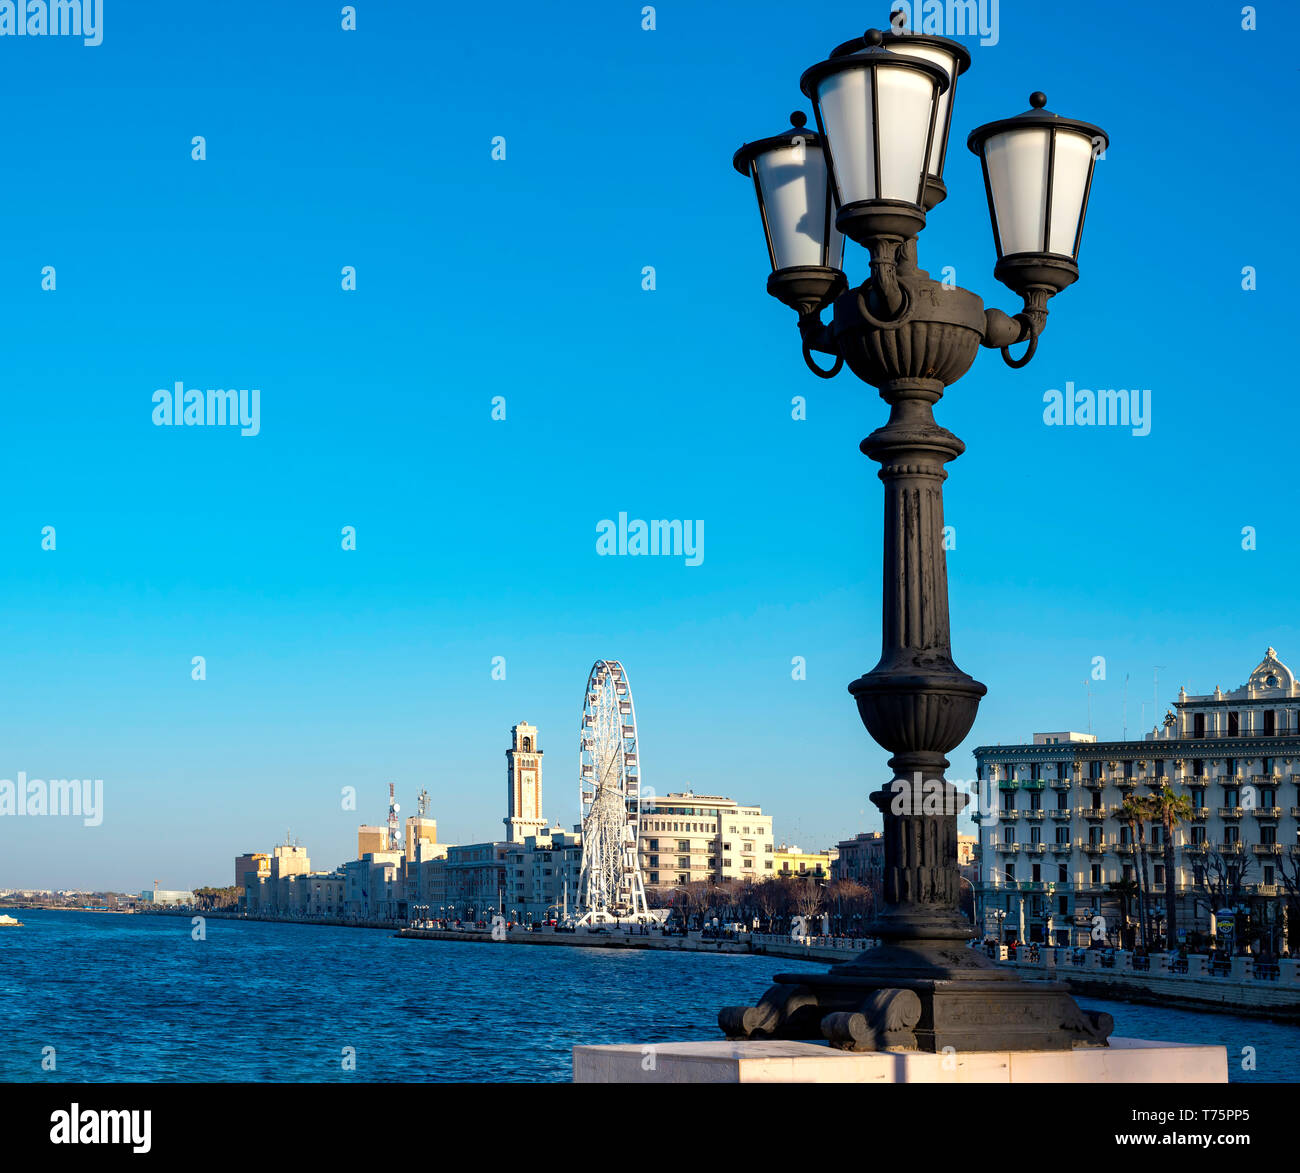 Bari, Italia - 8 de abril de 2018: primer plano característico del poste de la luz y en el fondo la noria montada en el paseo marítimo Foto de stock